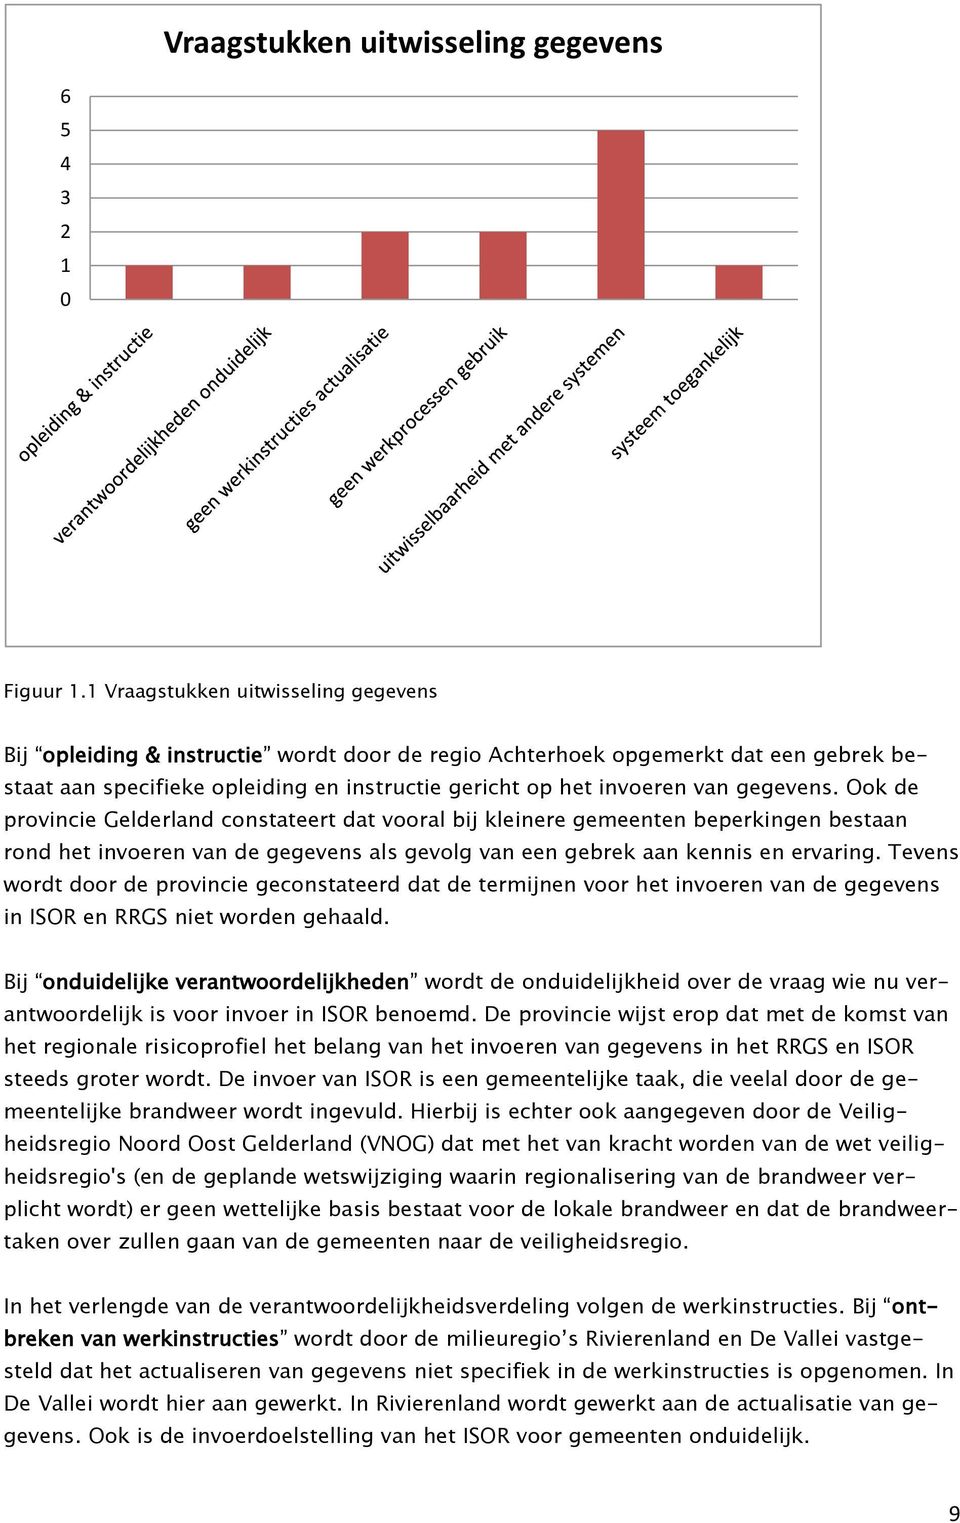 gegevens. Ook de provincie Gelderland constateert dat vooral bij kleinere gemeenten beperkingen bestaan rond het invoeren van de gegevens als gevolg van een gebrek aan kennis en ervaring.